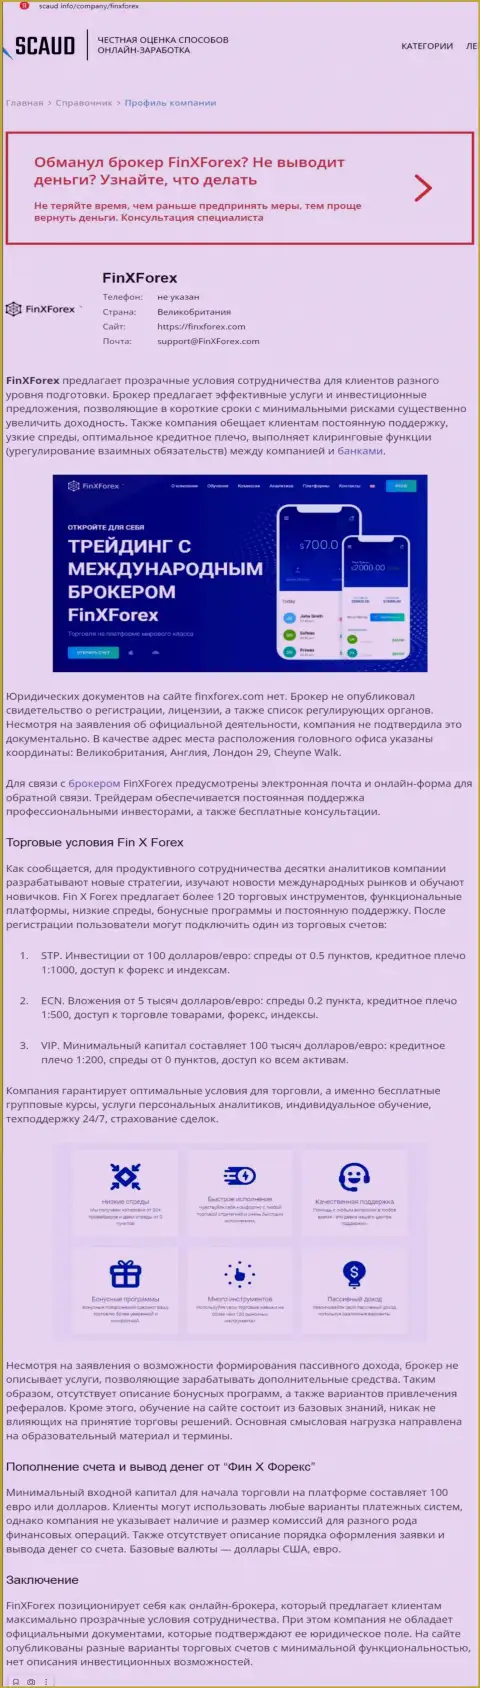 Обзорная статья с очевидными подтверждениями грабежа со стороны FinXForex